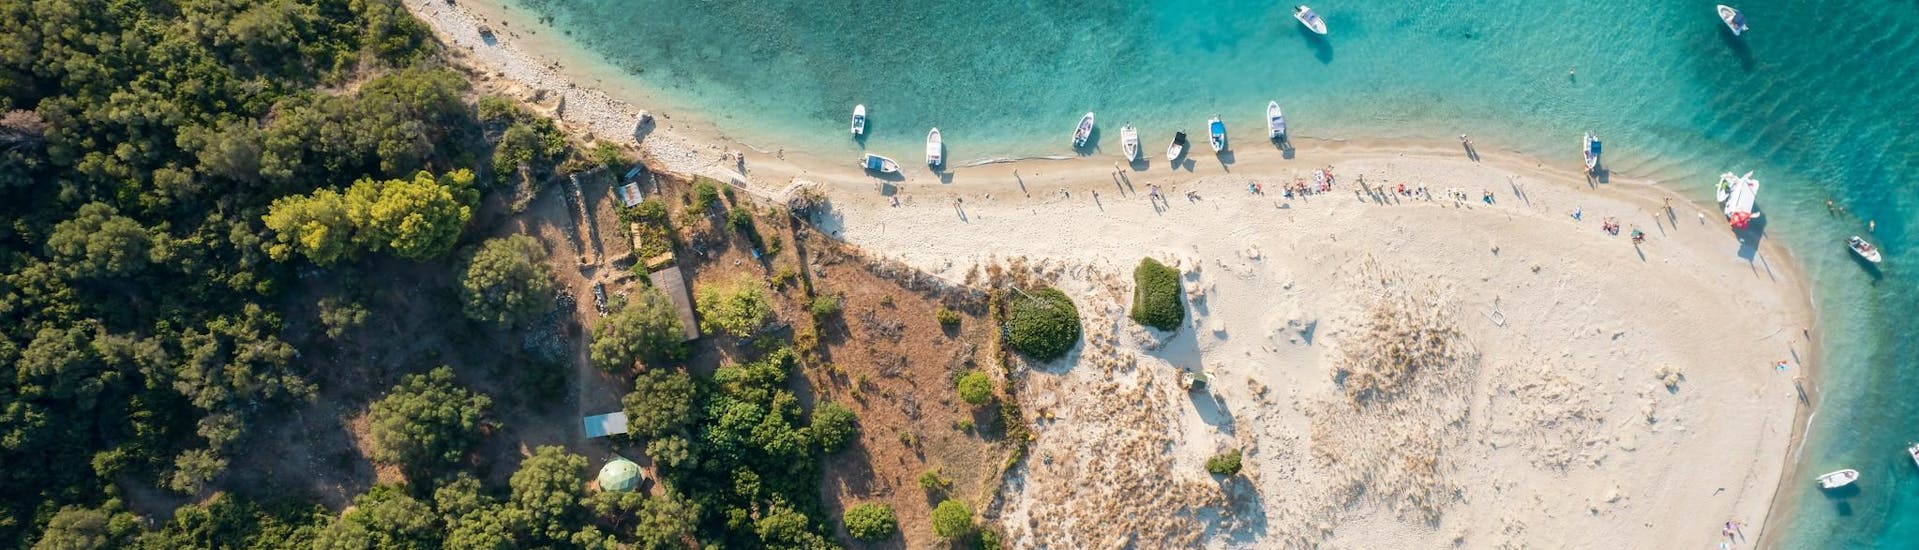 Uitzicht over het strand van Marathonisi, een prachtige locatie die je kunt bezoeken tijdens een boottocht op Zakynthos.